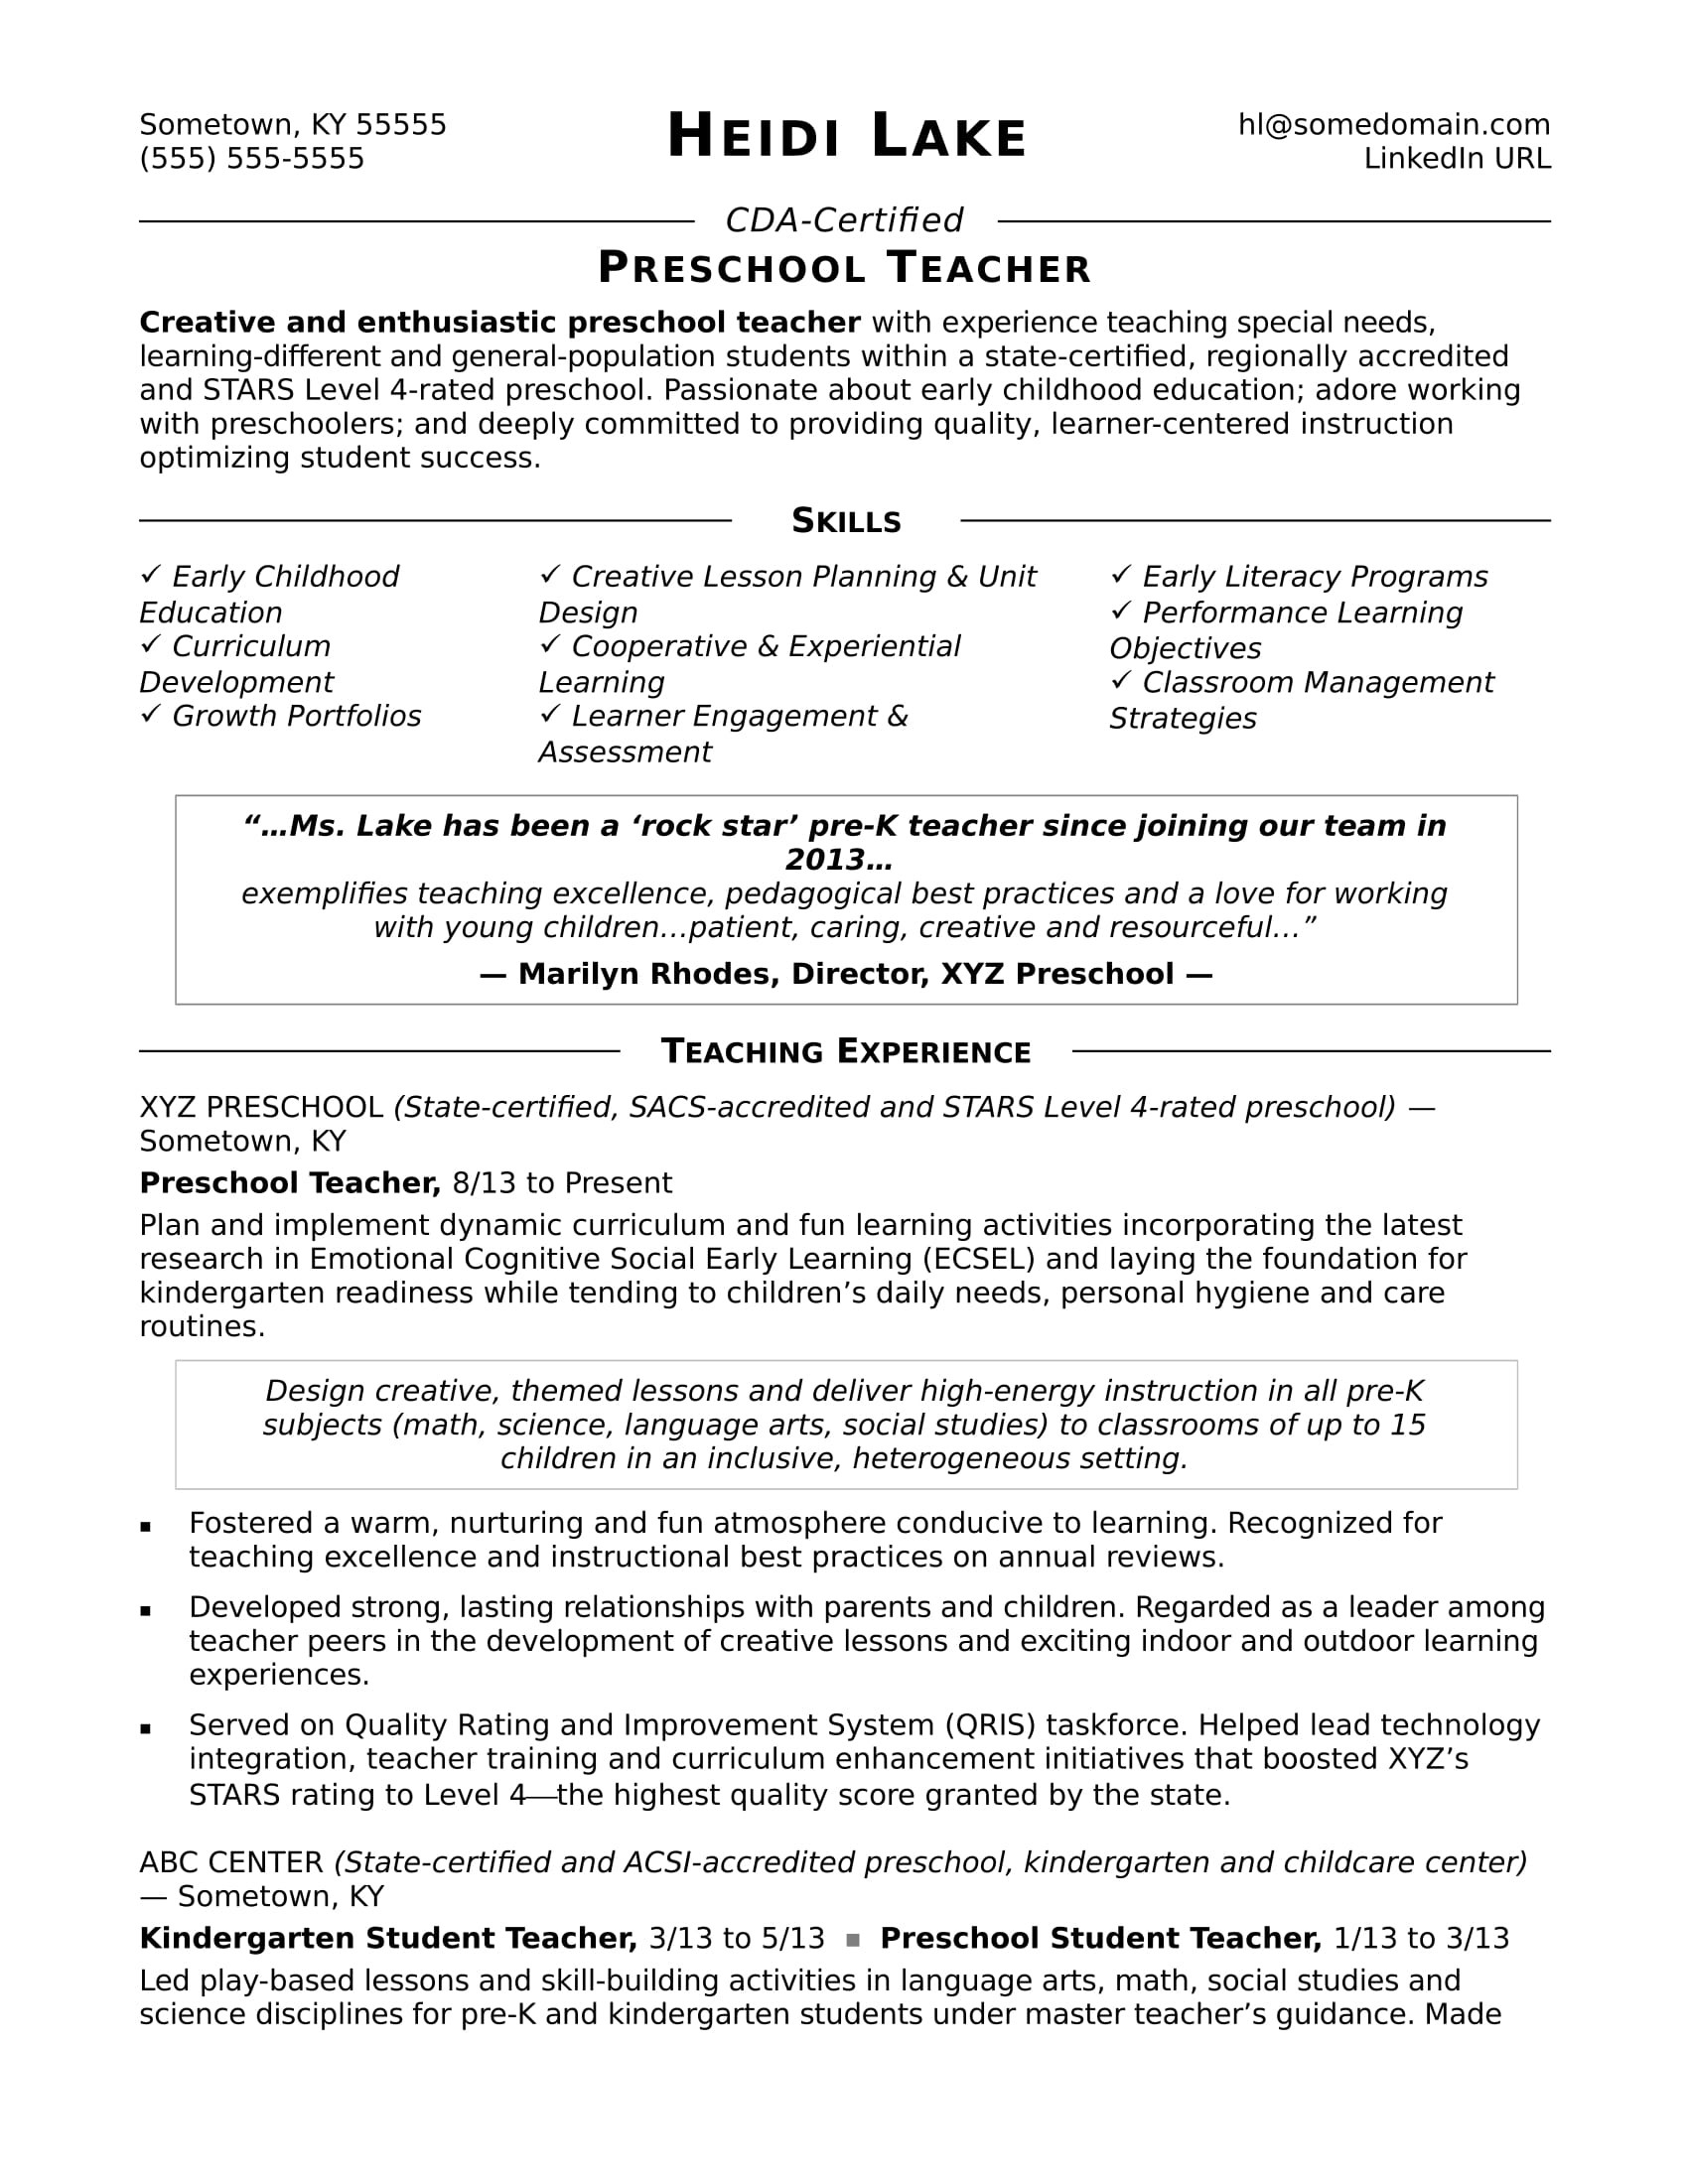 Sample Resume Objective to Work In Childcare Preschool Teacher Resume Sample Monster.com